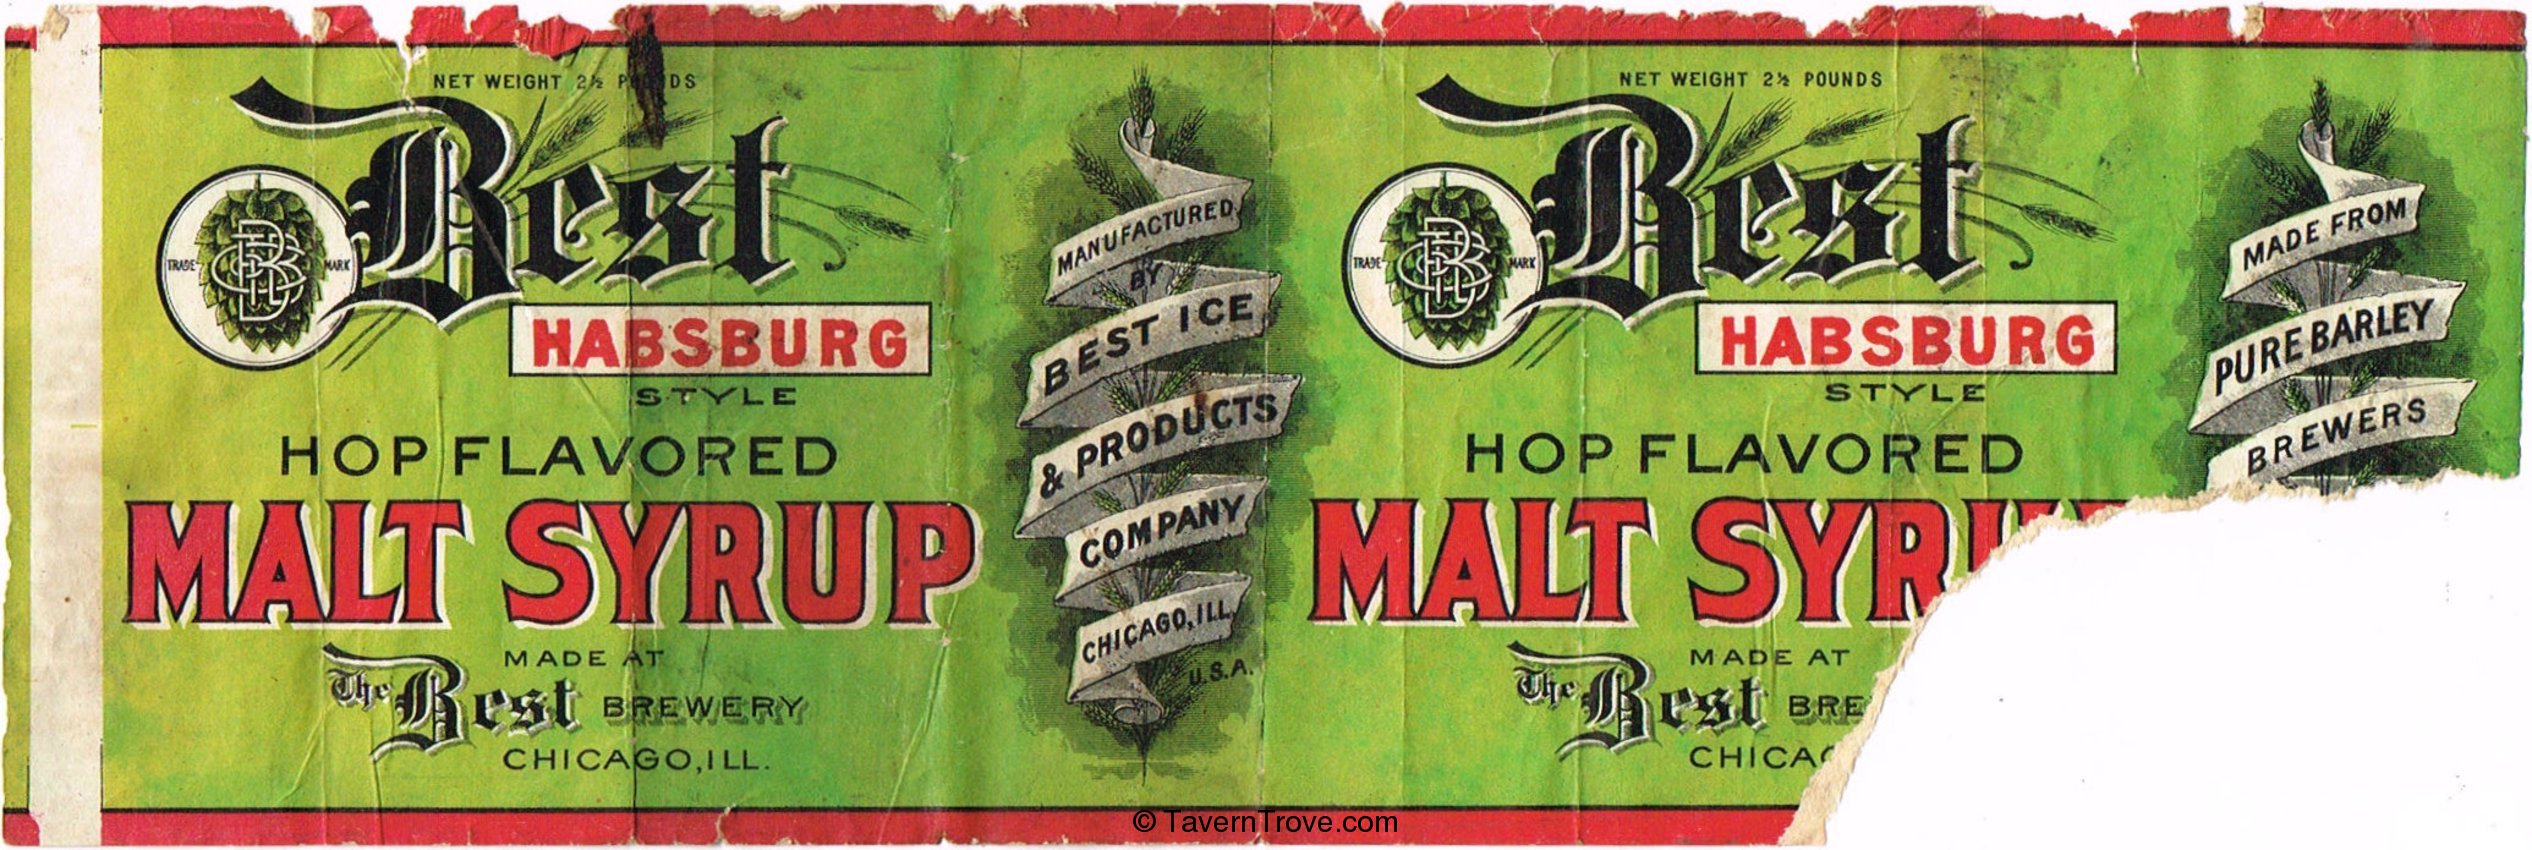 Best Hapsburg Style Malt Syrup